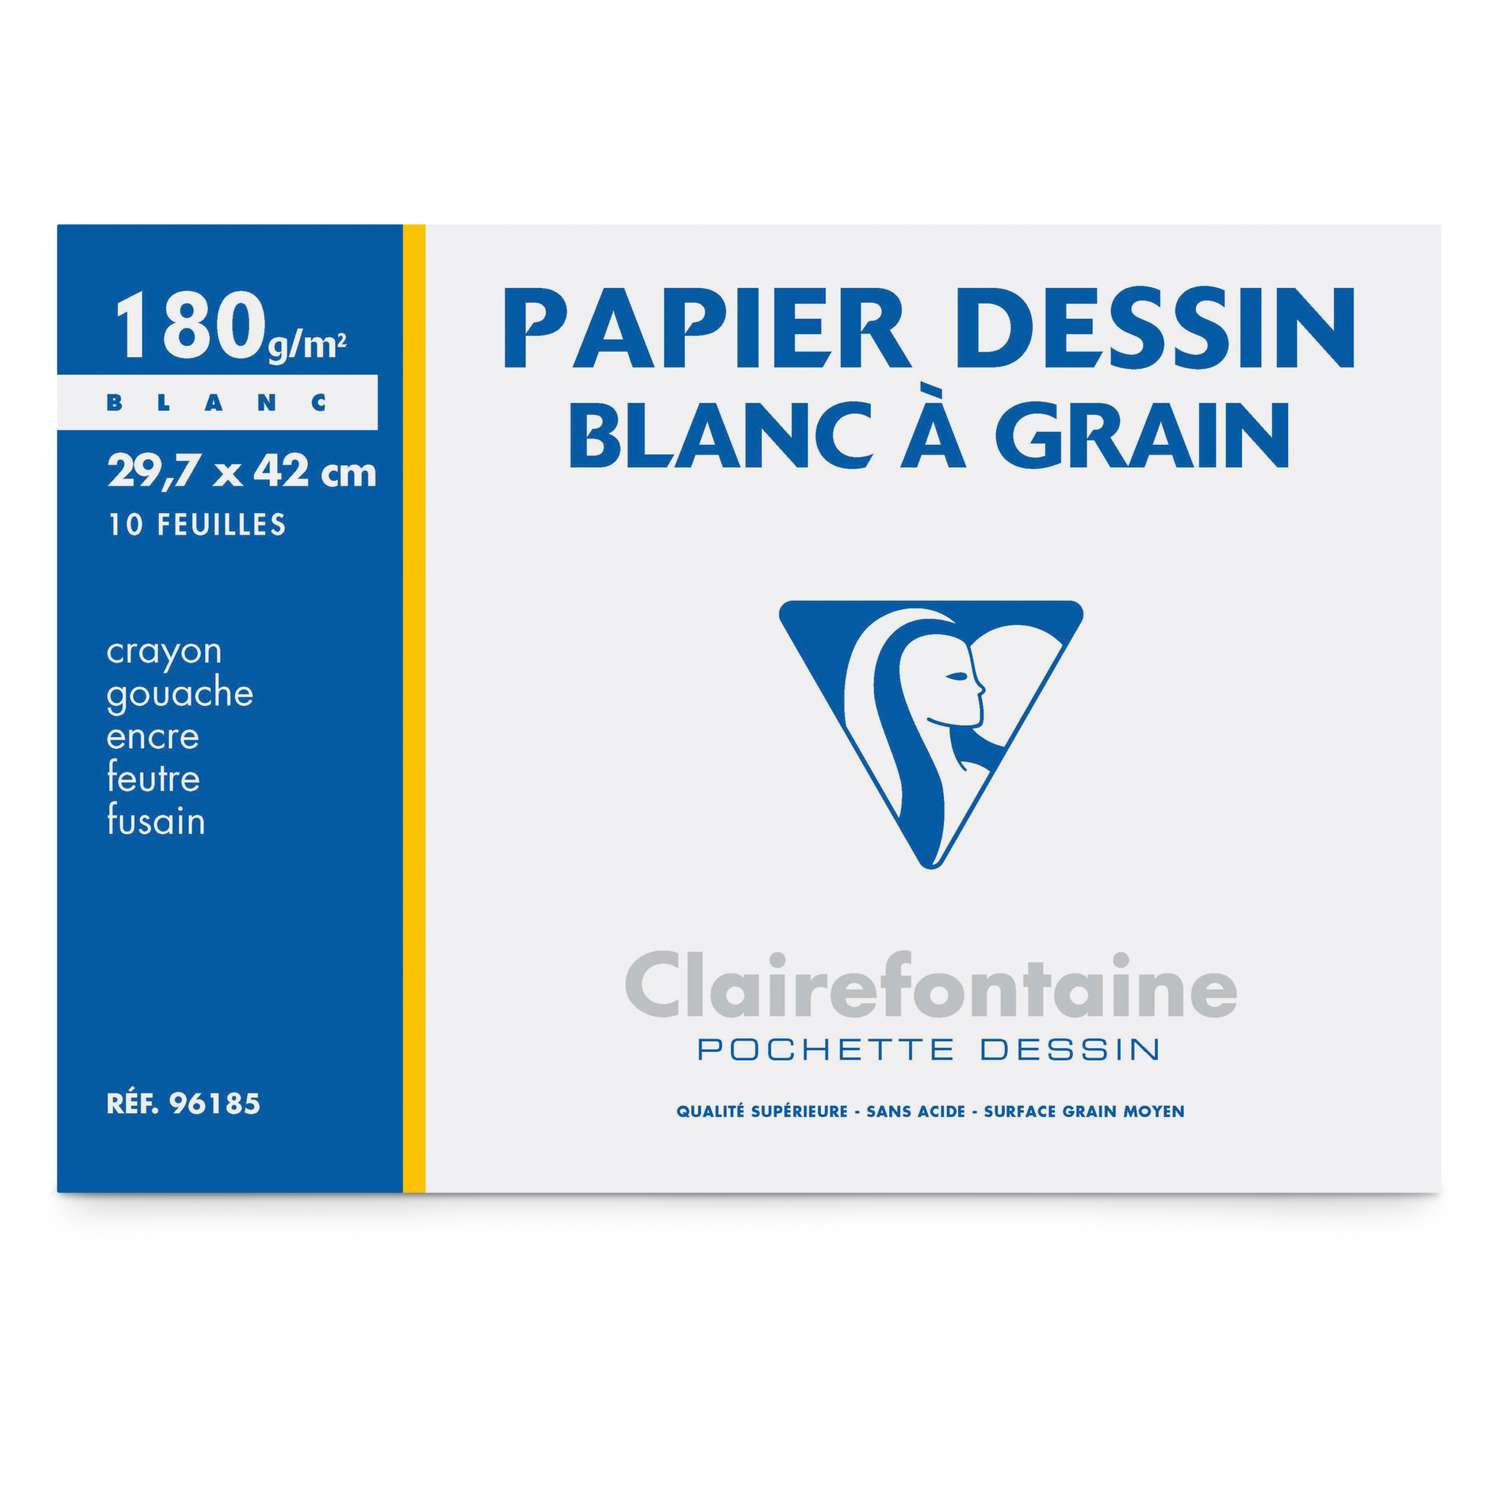 Canson - La Pochette C à Grain - Papier à dessin - A4 - 125 g/m² - 12  feuilles - Blanc